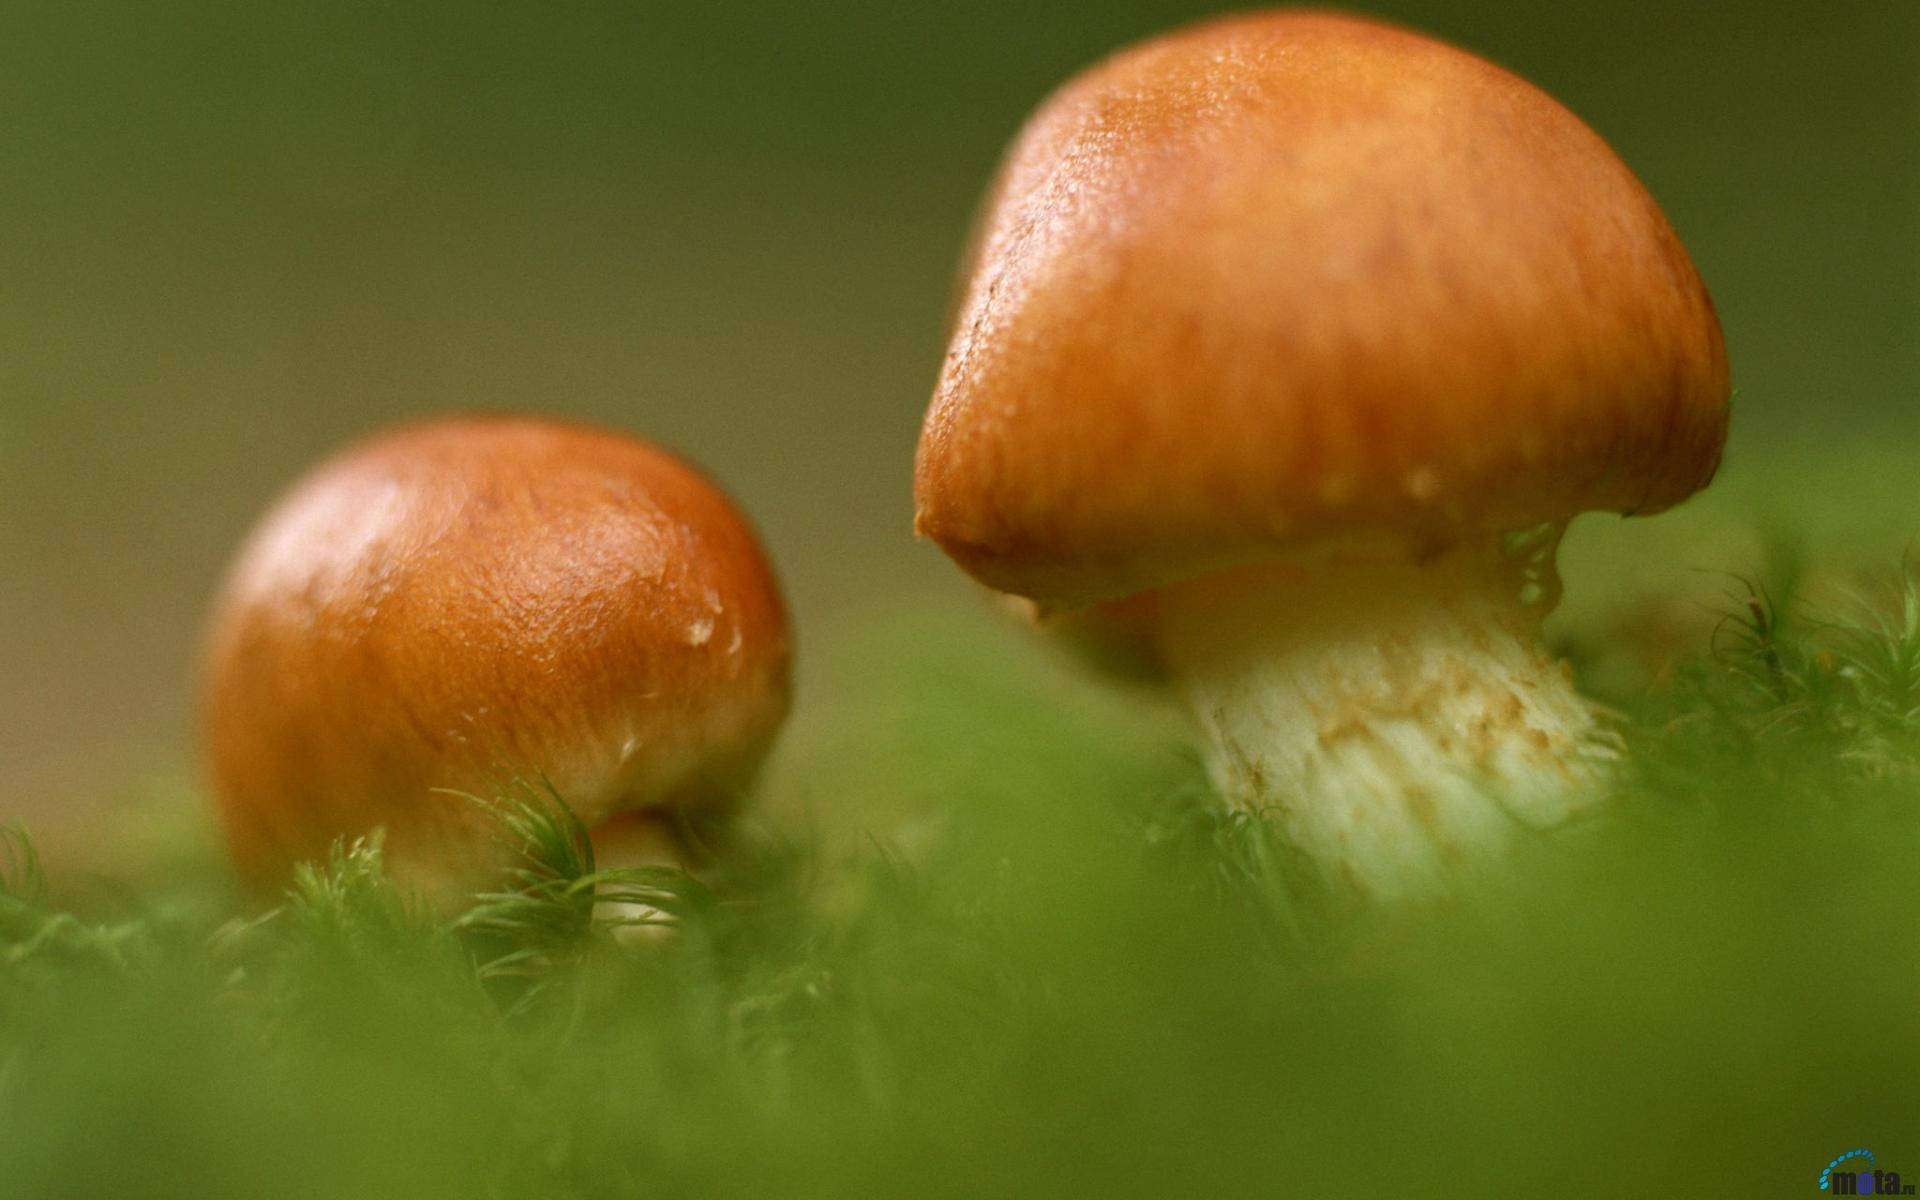 Two Cute Mushrooms Growing